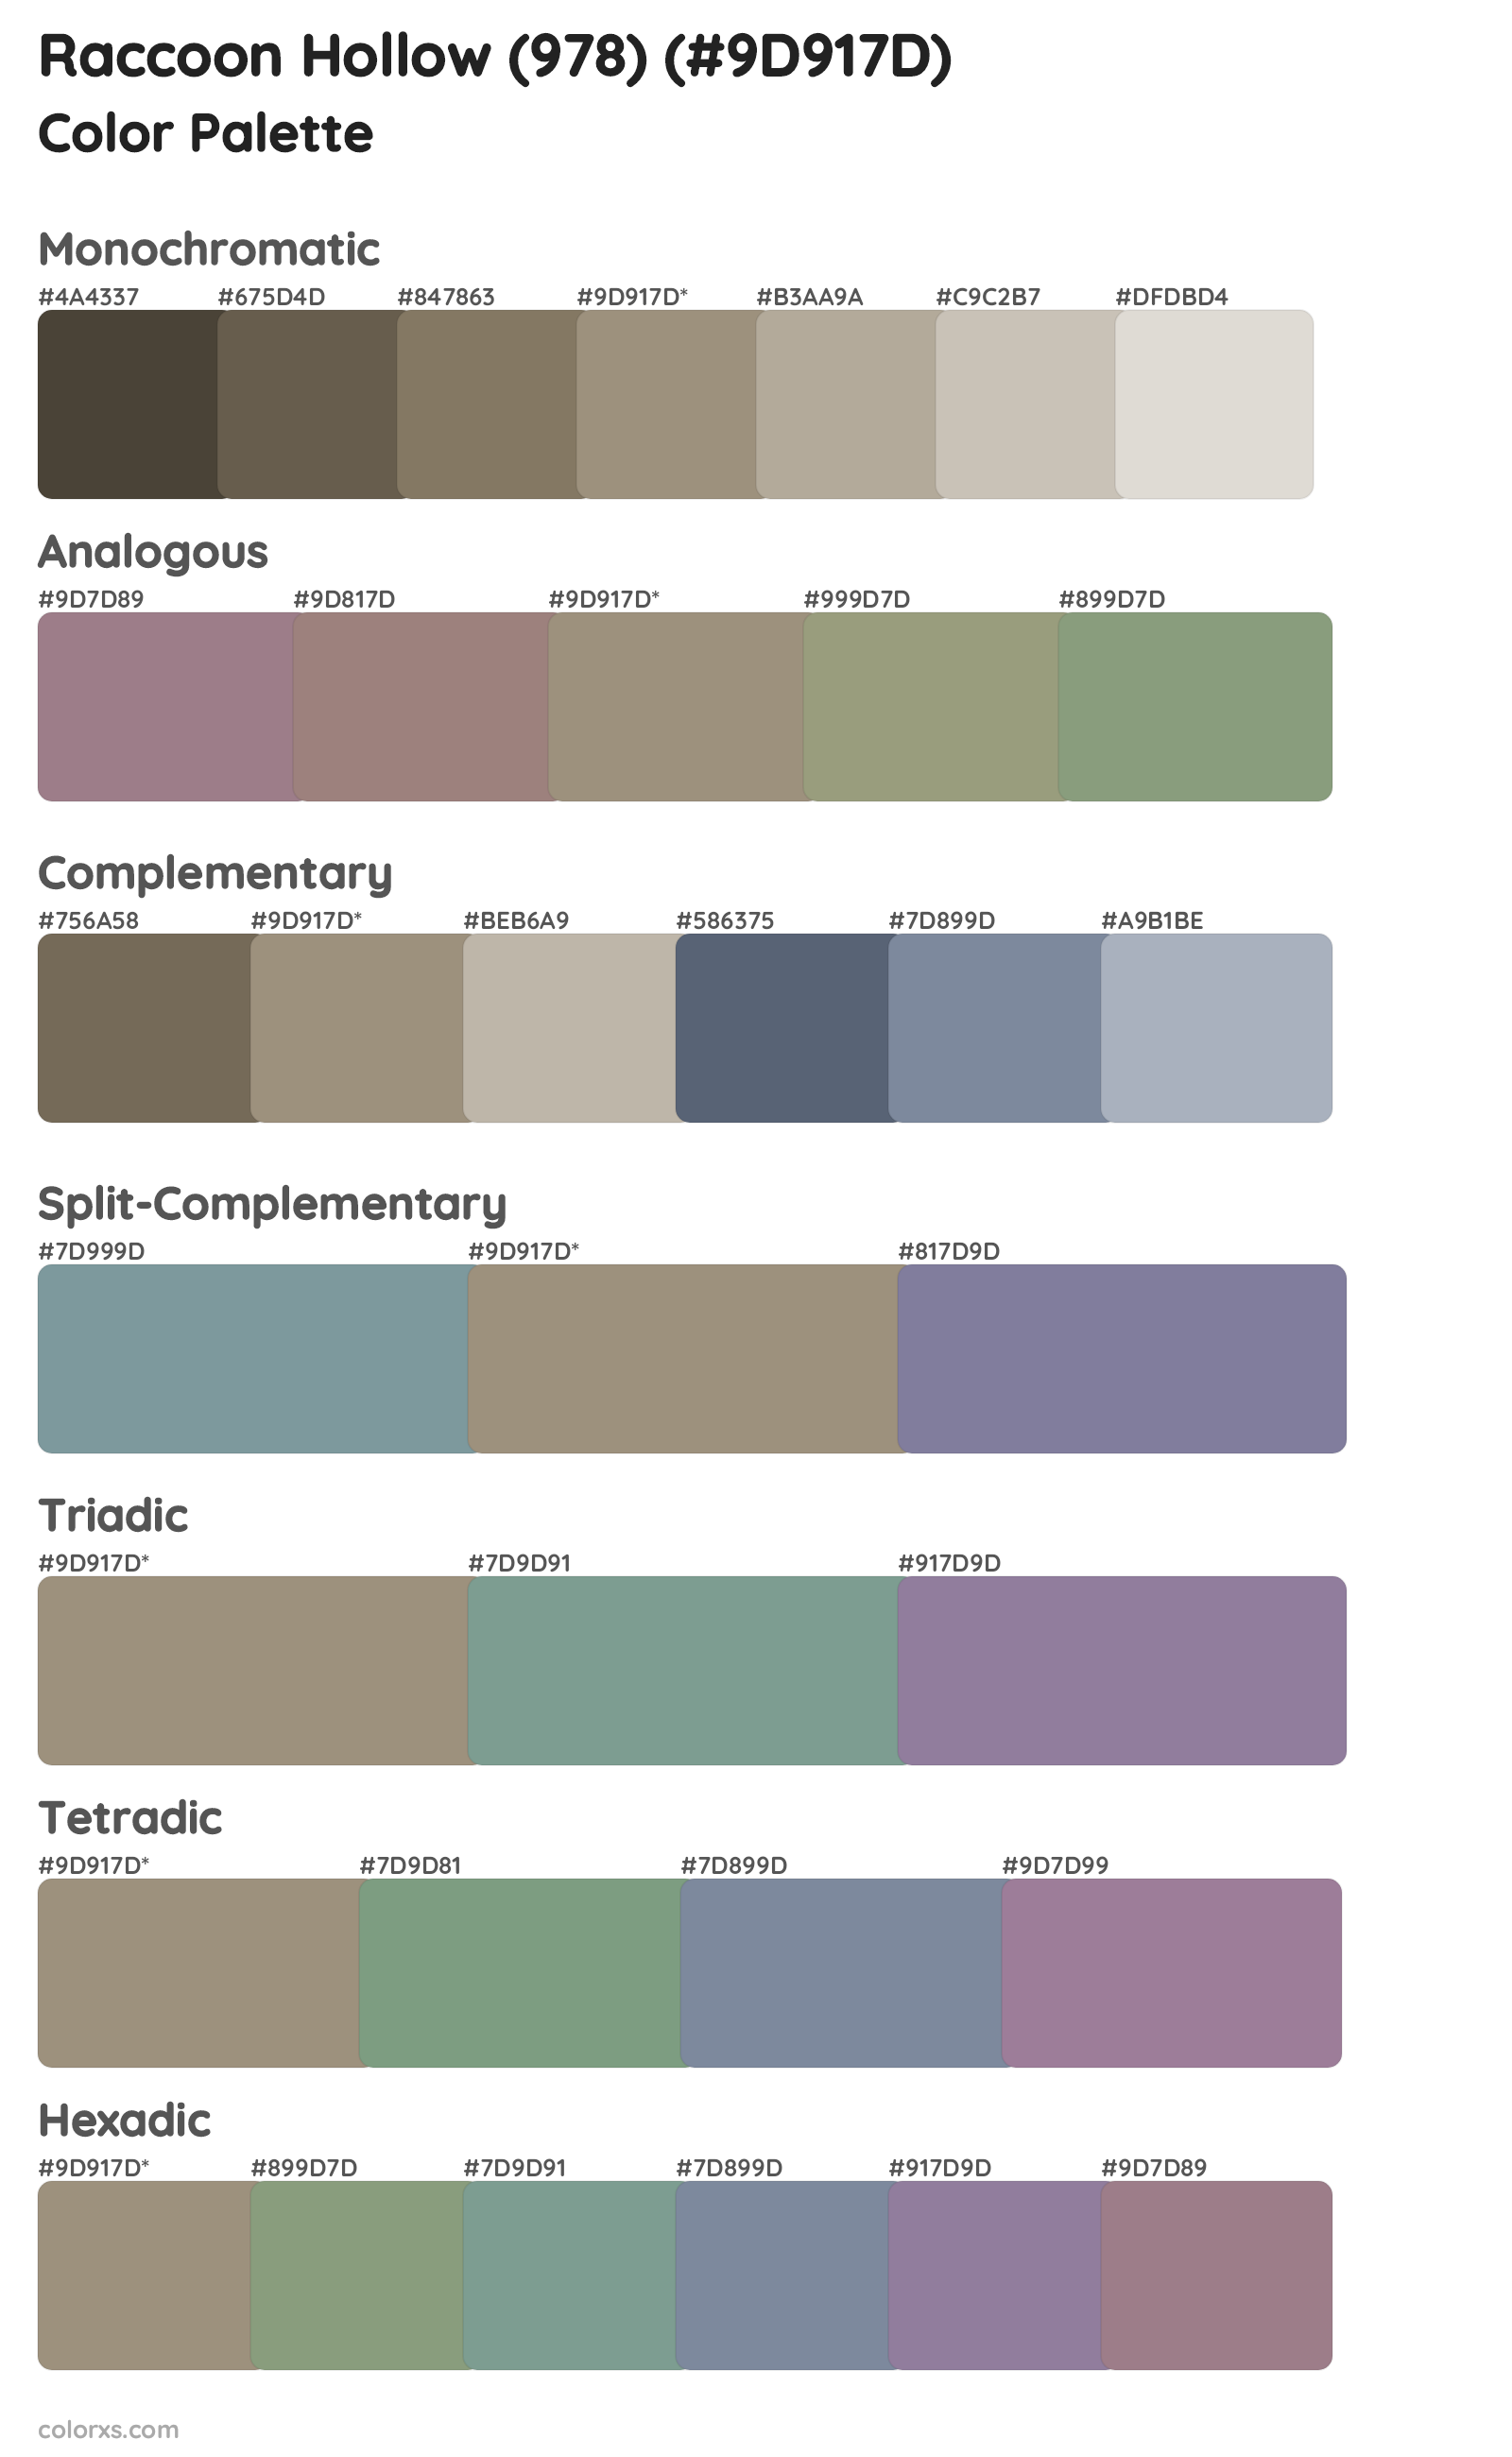 Raccoon Hollow (978) Color Scheme Palettes